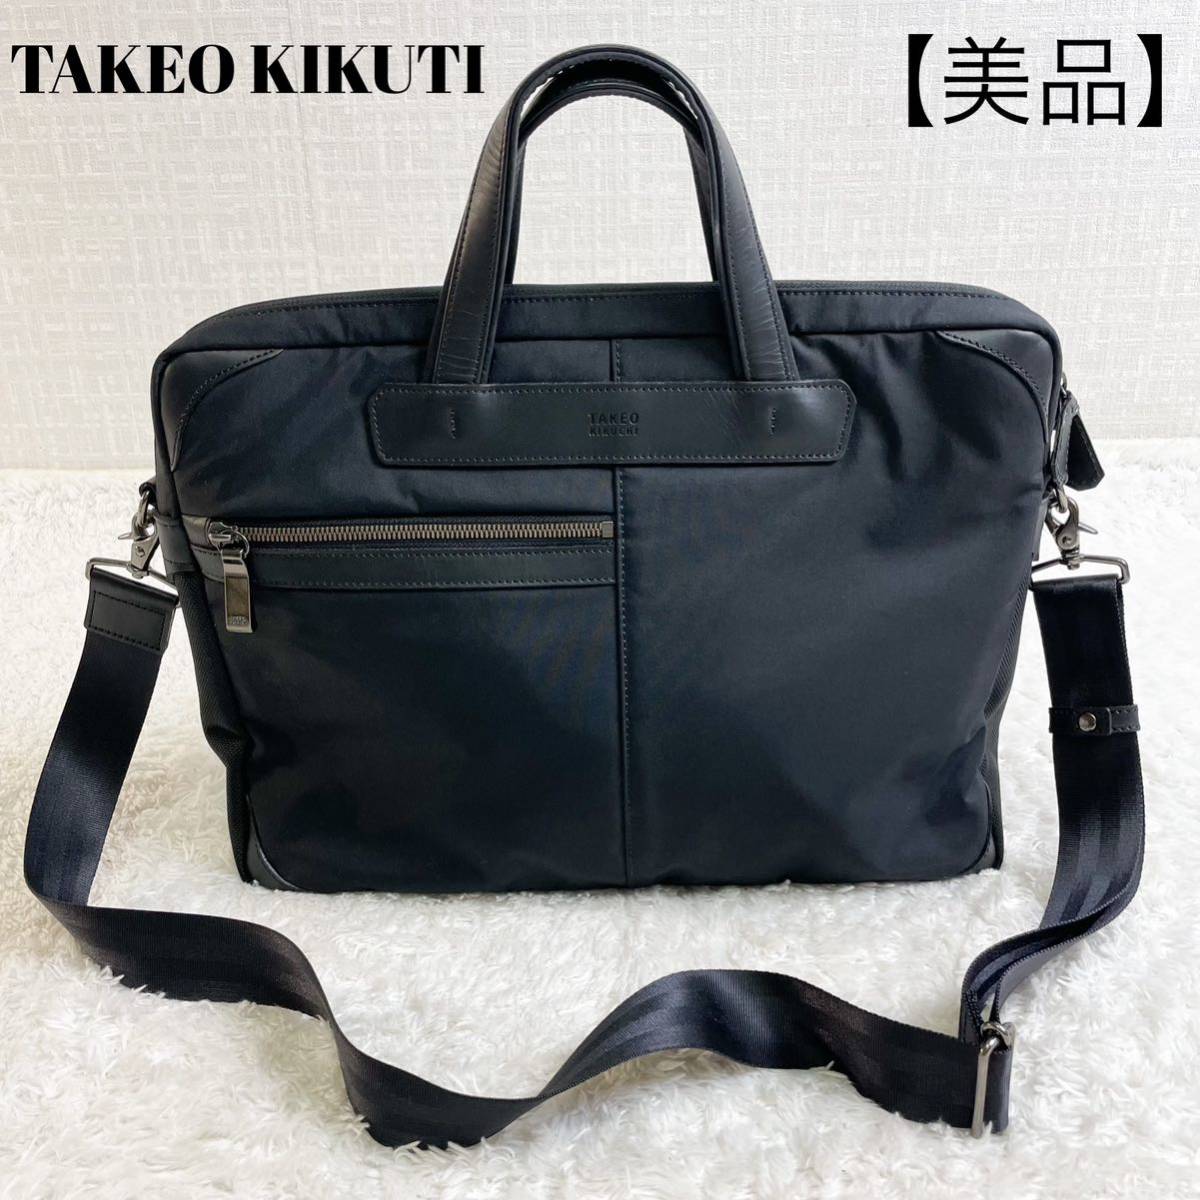 タケオキクチ ビジネスバッグ 2way ナイロン レザー 黒 日本製 TAKEO